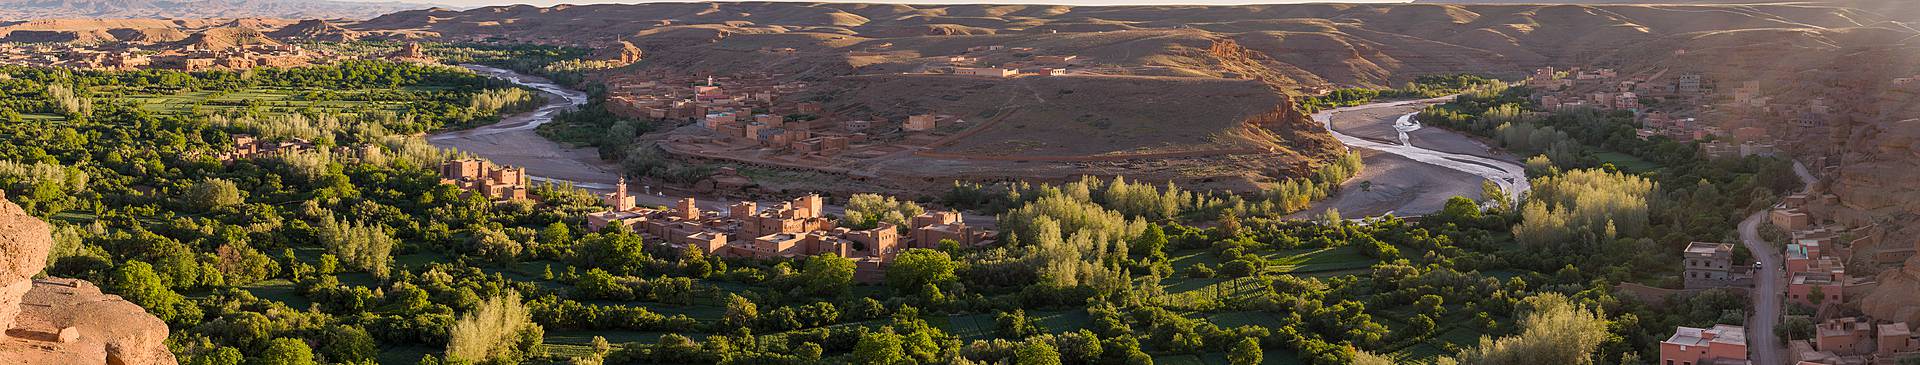 Viajes a Marruecos en primavera